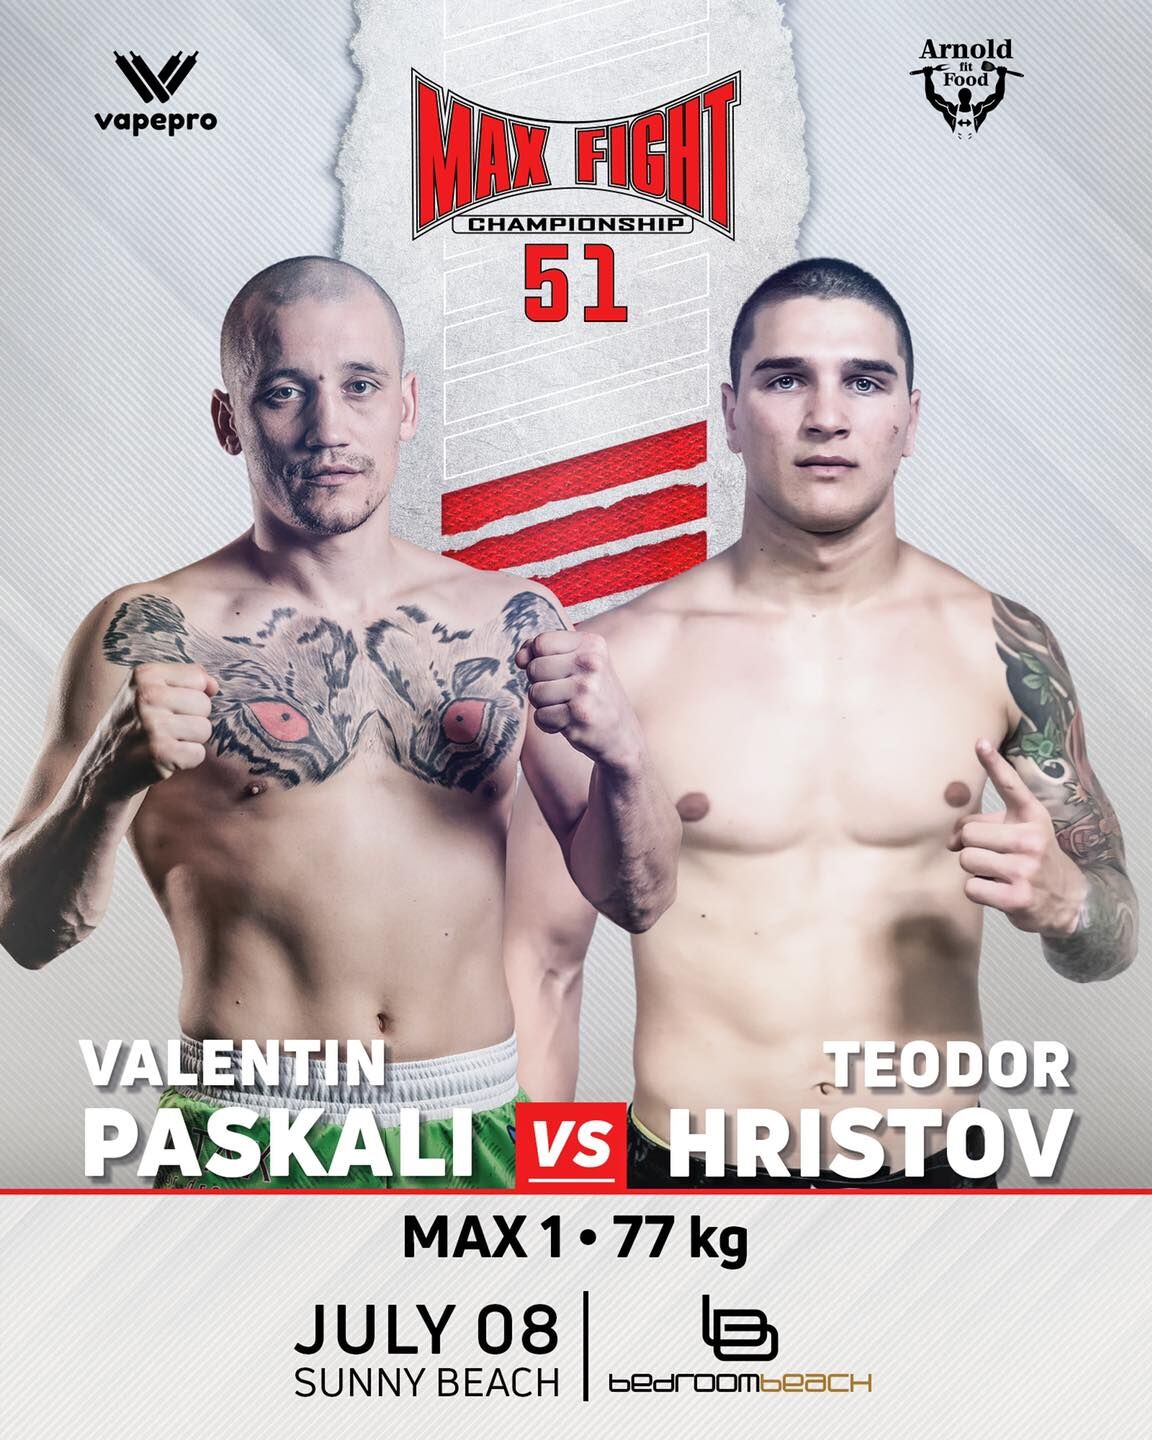 Варненският боец Теодор Христов се завръща на ринга на MAX FIGHT 51